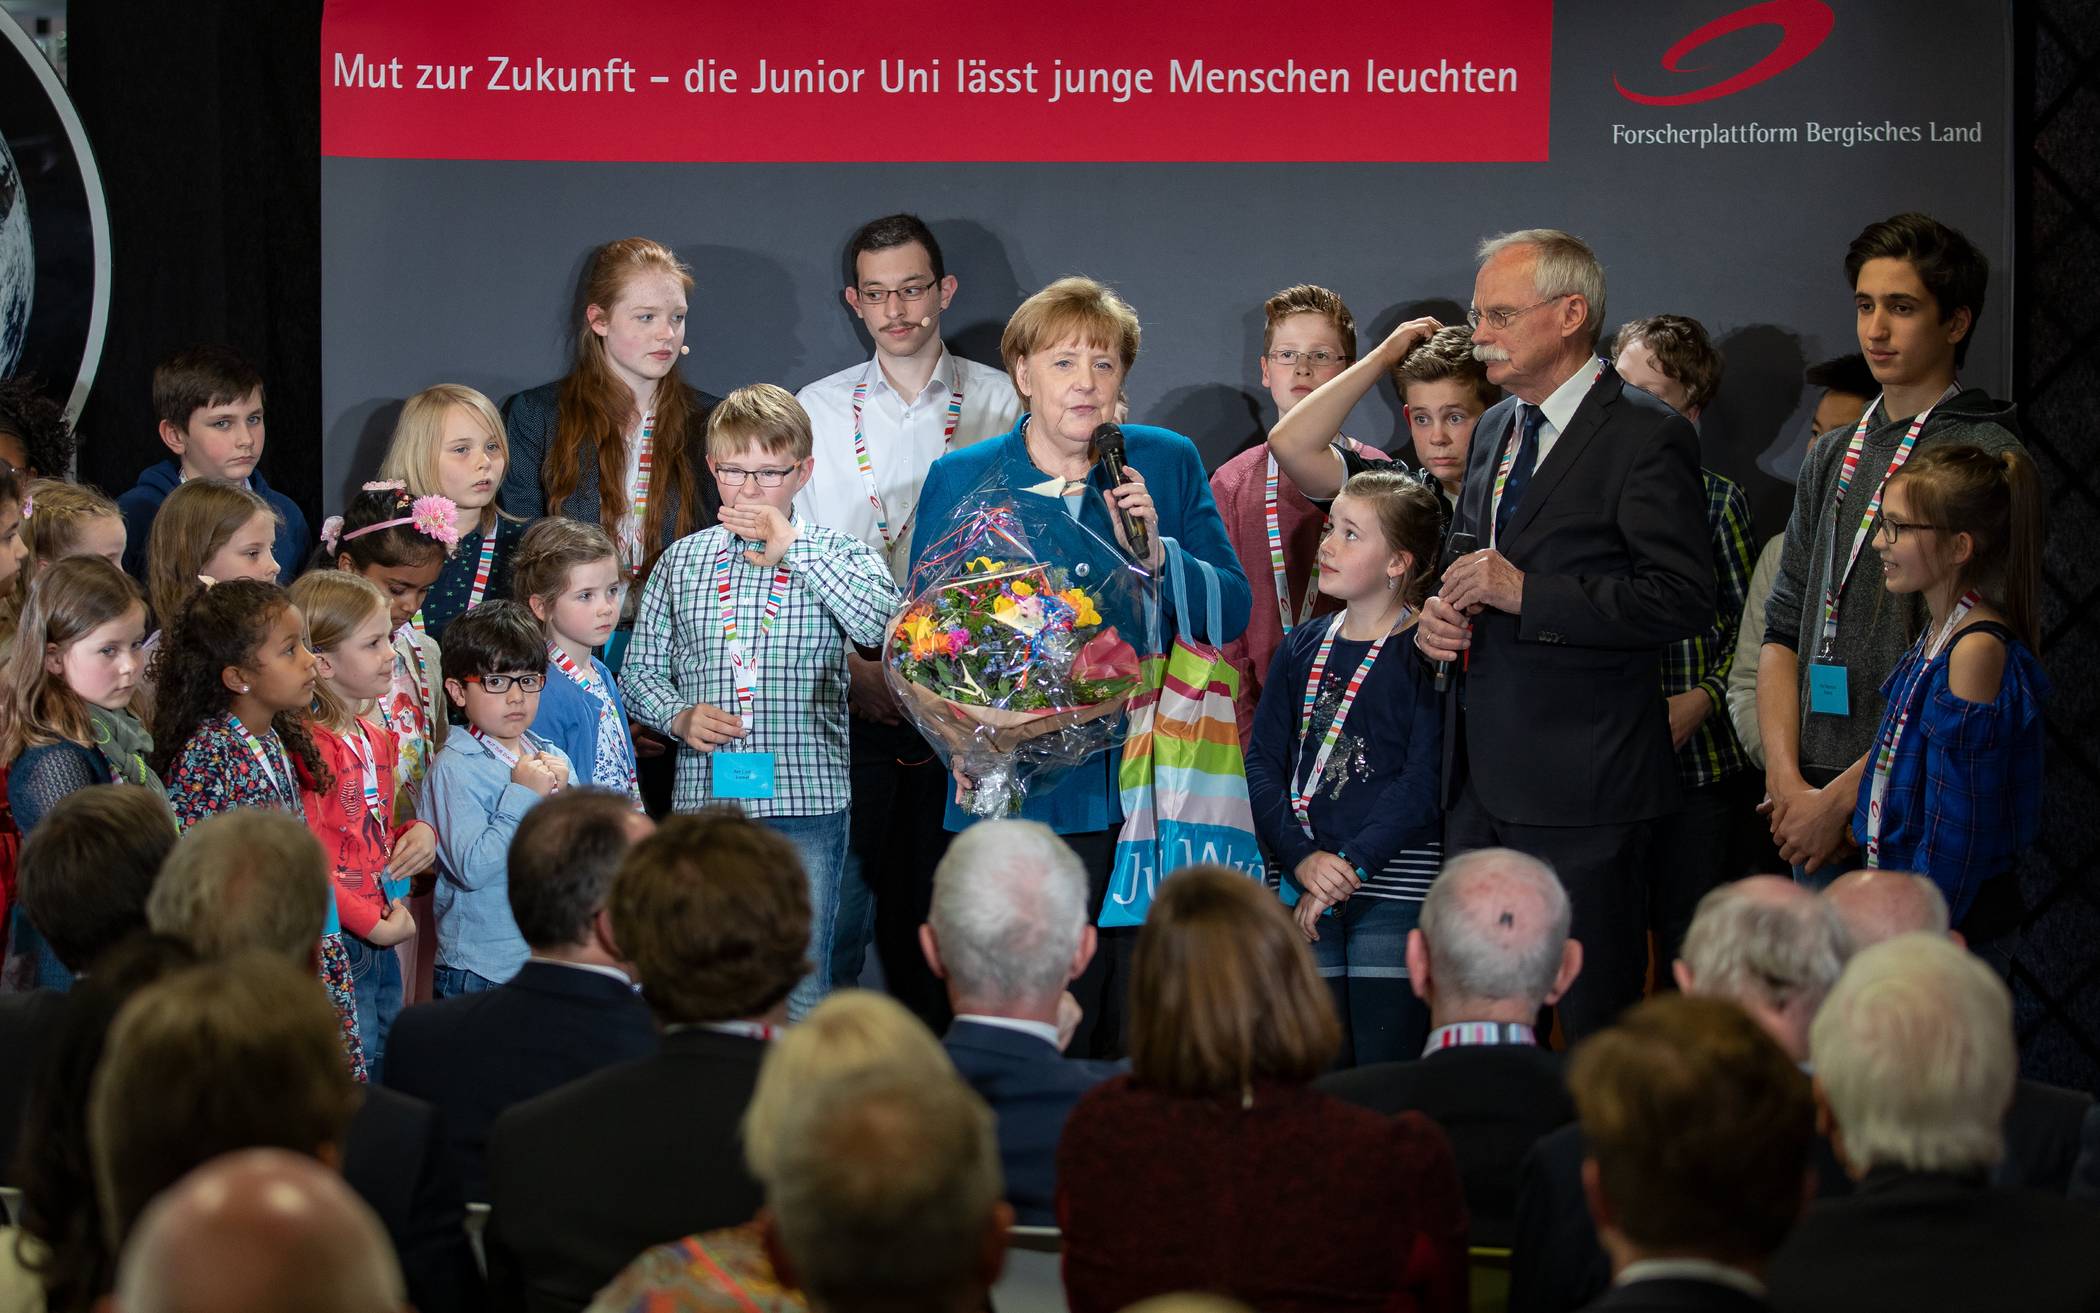 Angela Merkel zu Besuch in der Wuppertaler Junior Uni 13. Mai 2019